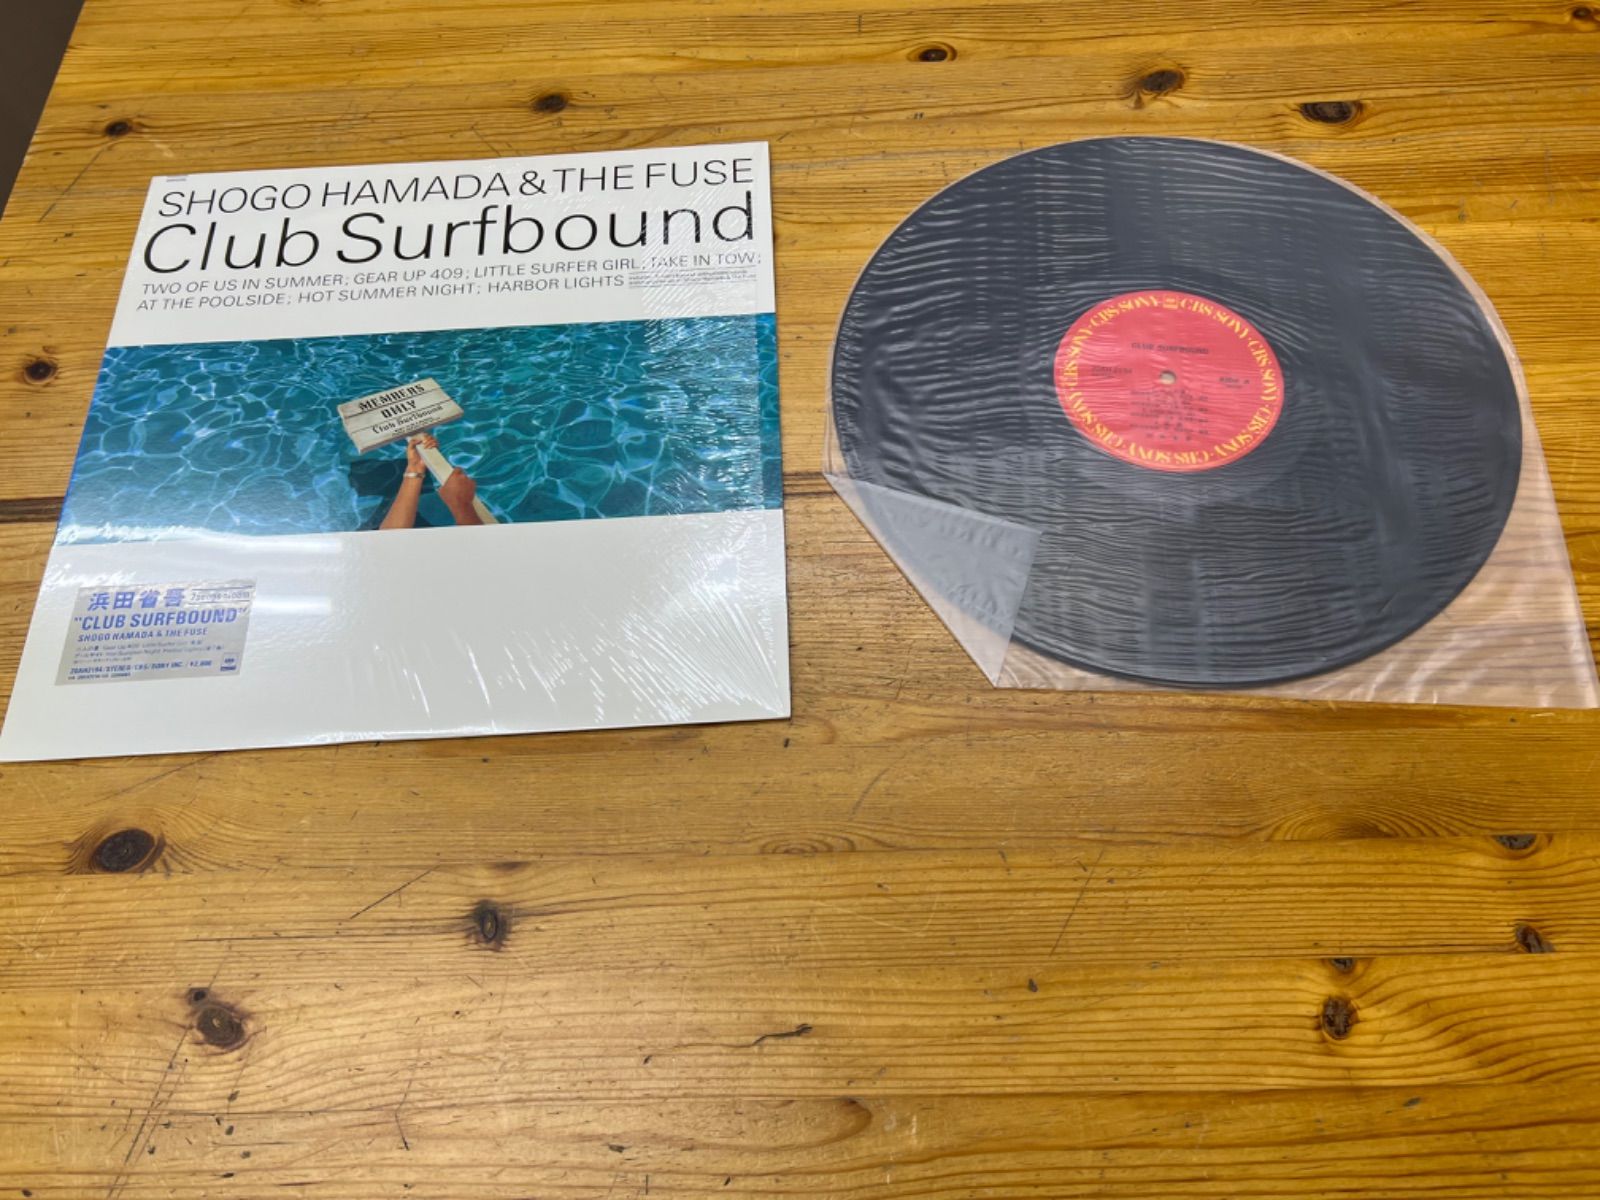 ホットセール 浜田省吾THE FUSE アナログレコード Club Surfbound